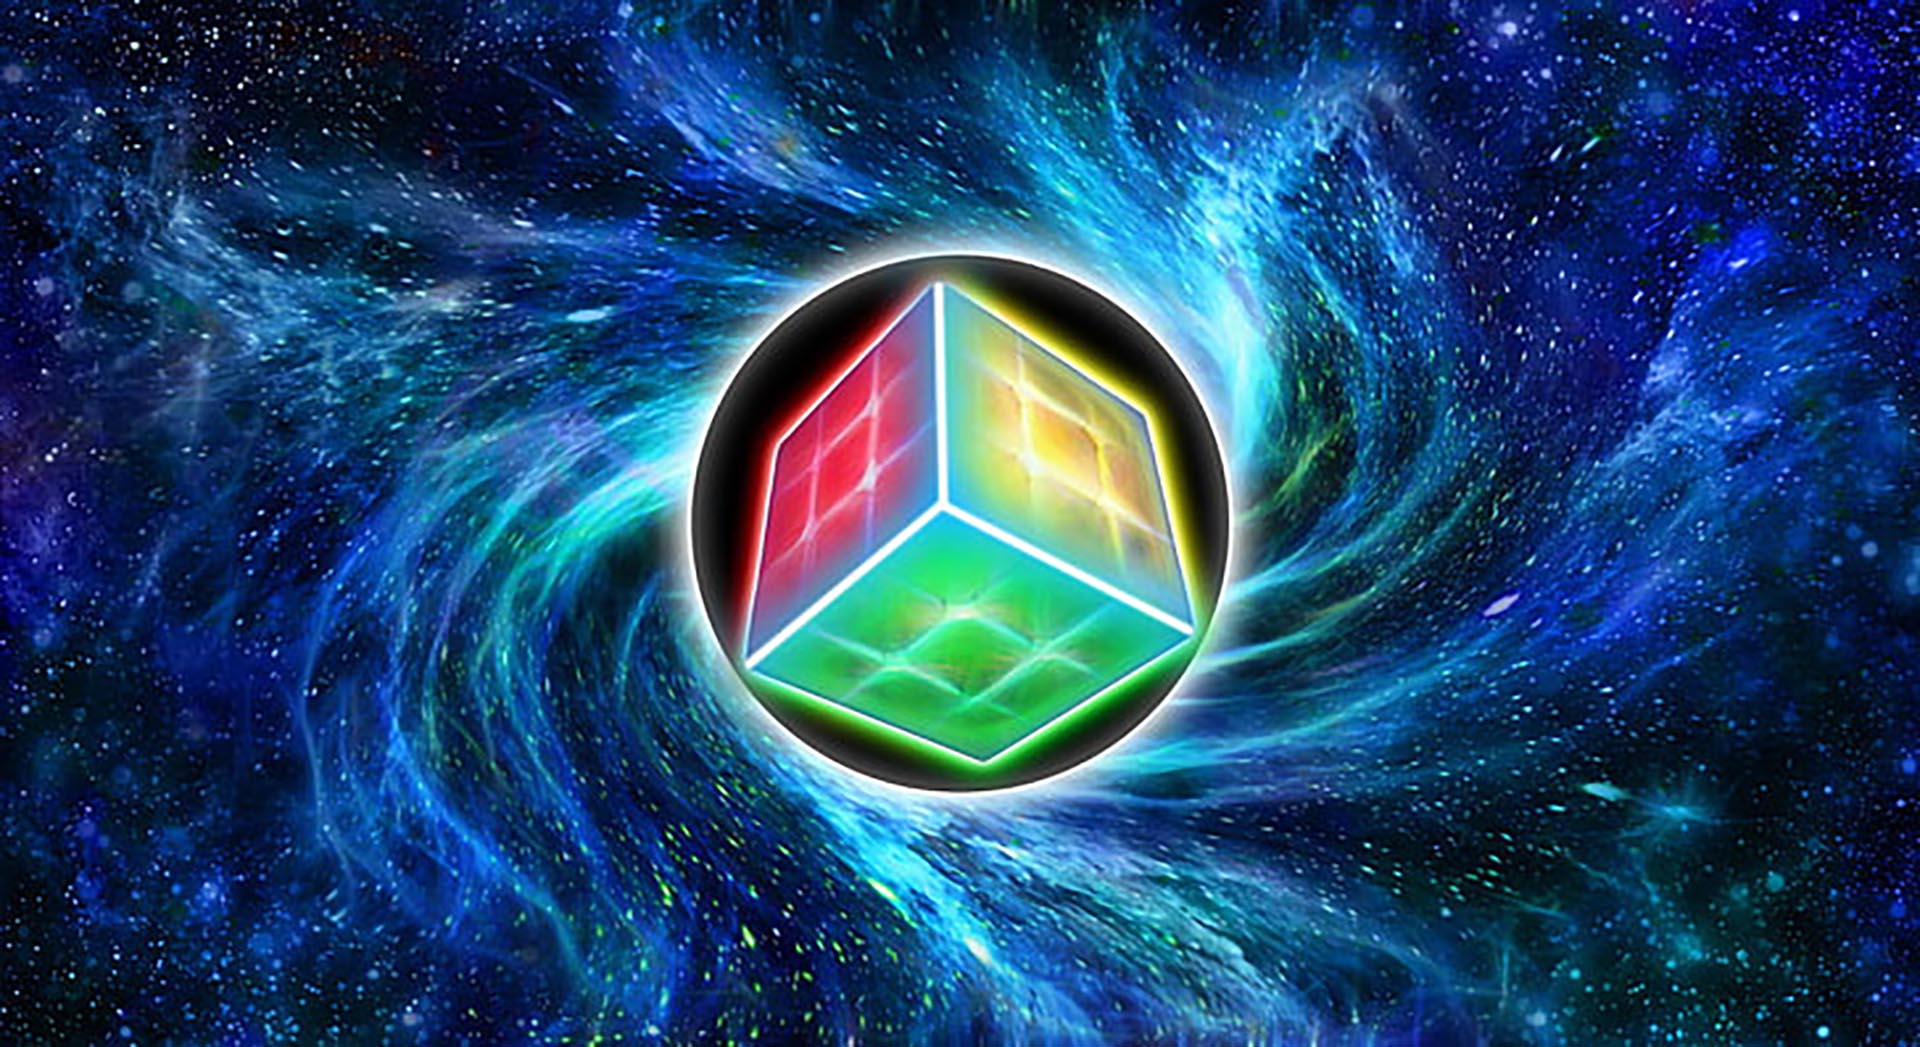 Hình nền Rubik 3x3: Hình nền Rubik 3x3 là sự lựa chọn tuyệt vời để trang trí cho thiết bị của bạn. Với các màu sắc tươi sáng và hình ảnh đầy sáng tạo, bạn sẽ nhanh chóng trở thành tâm điểm của mọi cuộc trò chuyện.